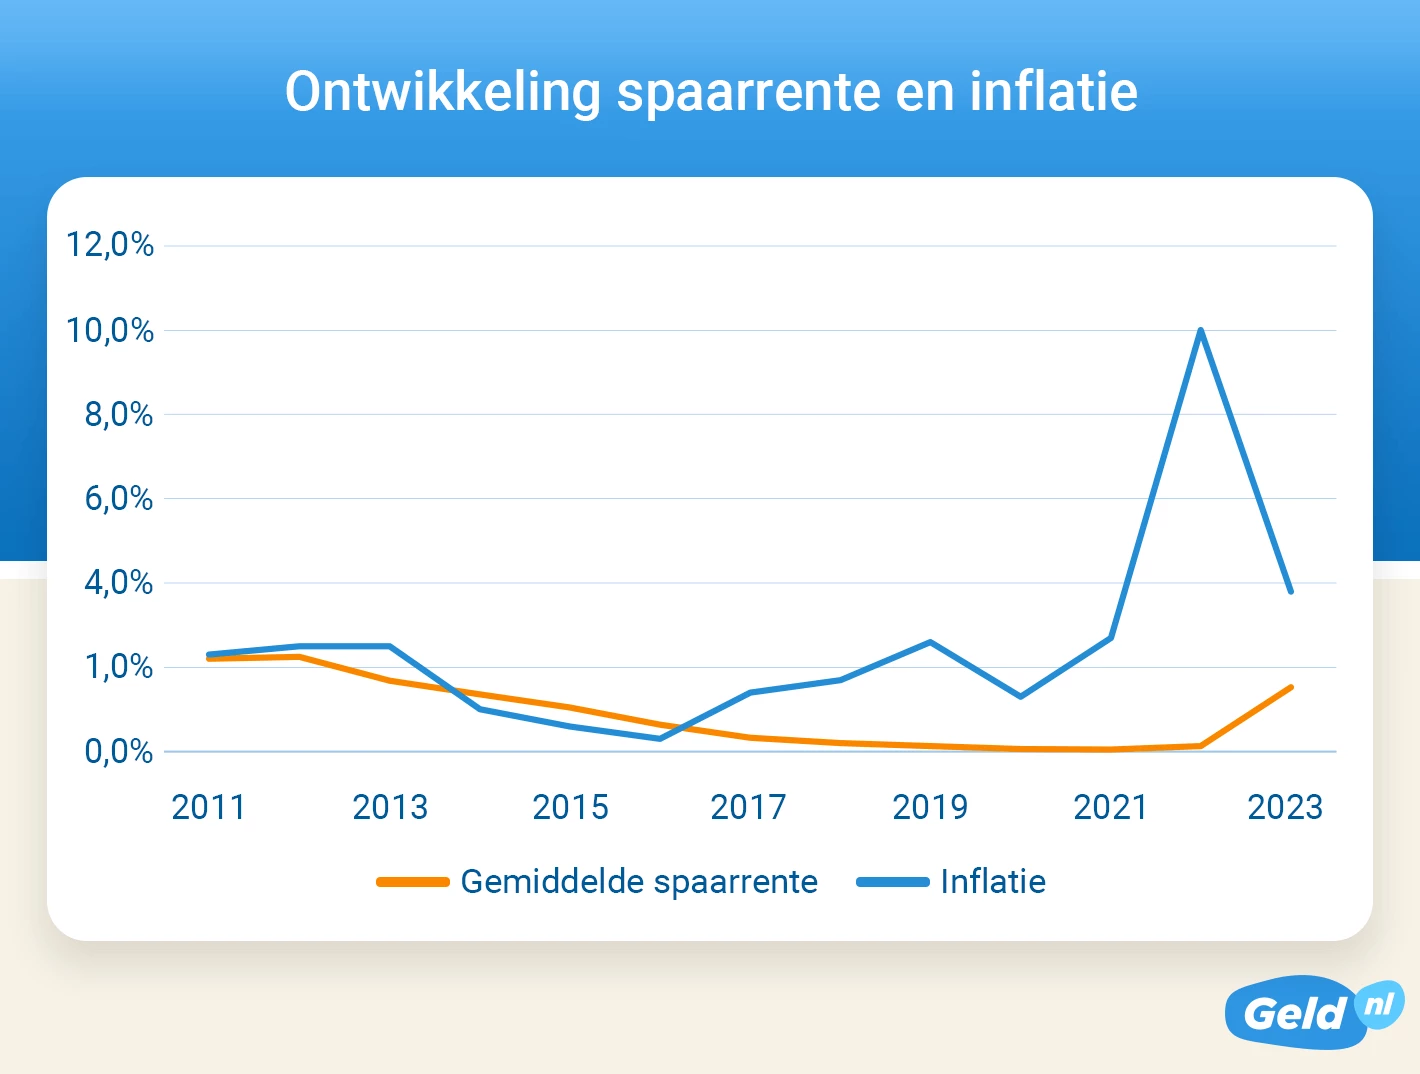 Ontwikkeling spaarrente en inflatie van 2010 tot en met 2023